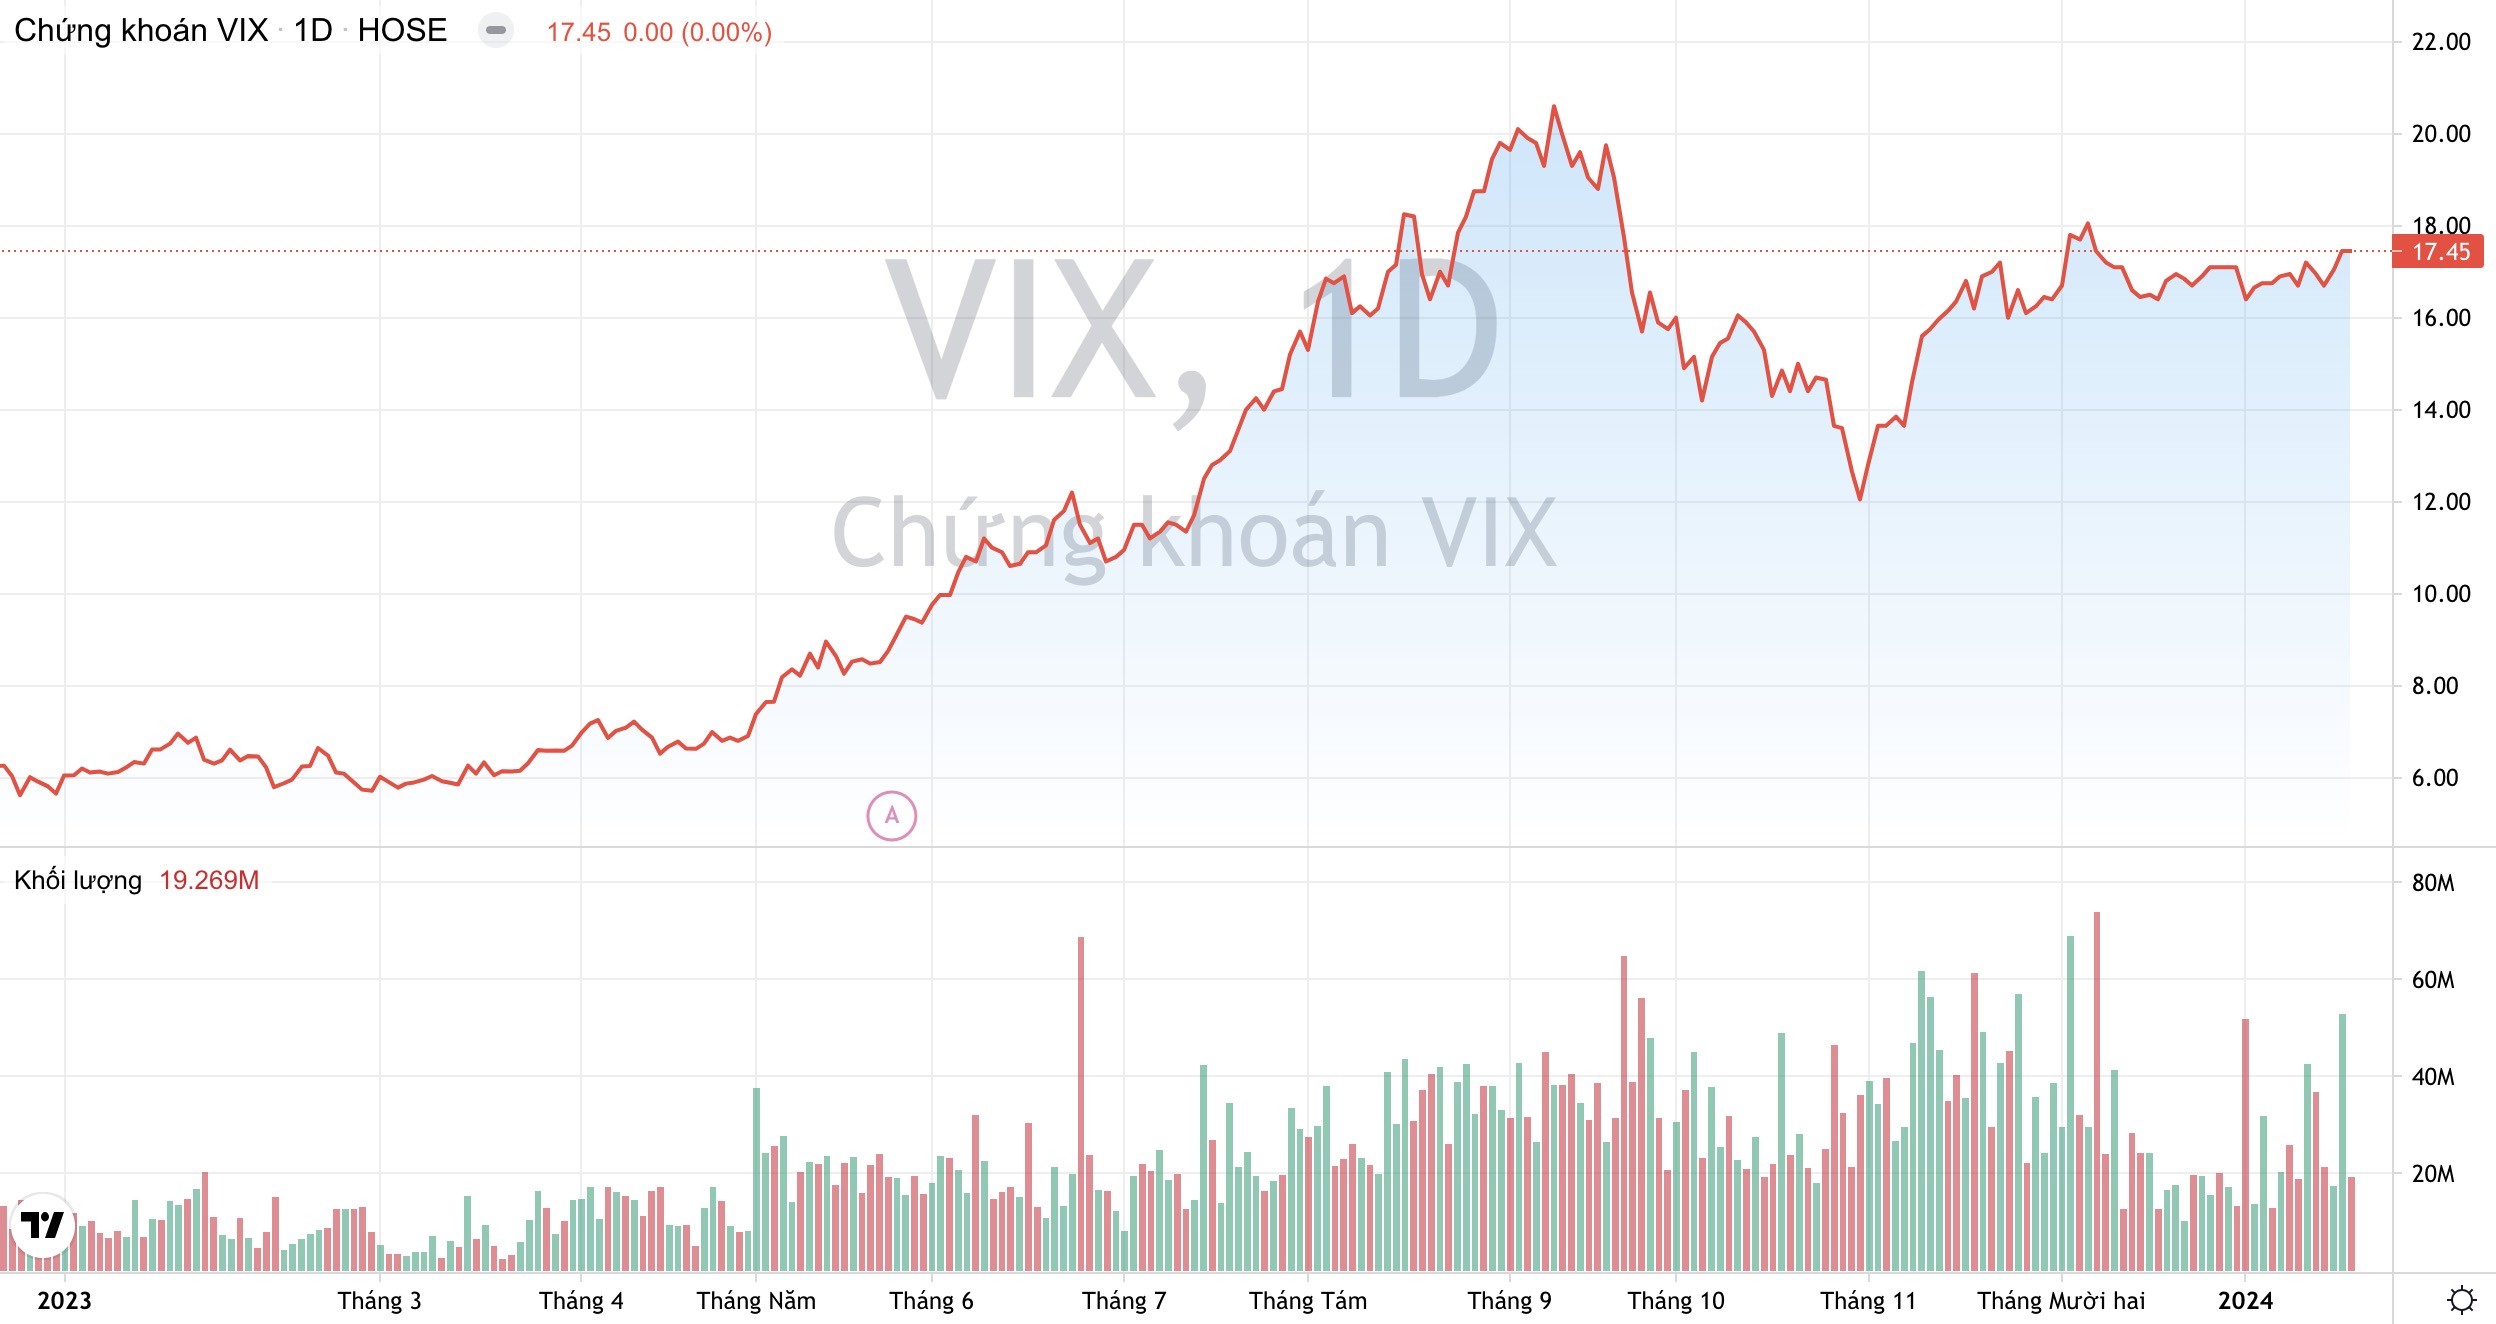 VN-Index phục hồi, Chứng khoán VIX ghi nhận lãi ròng cao nhất 10 năm trở lại đây 2